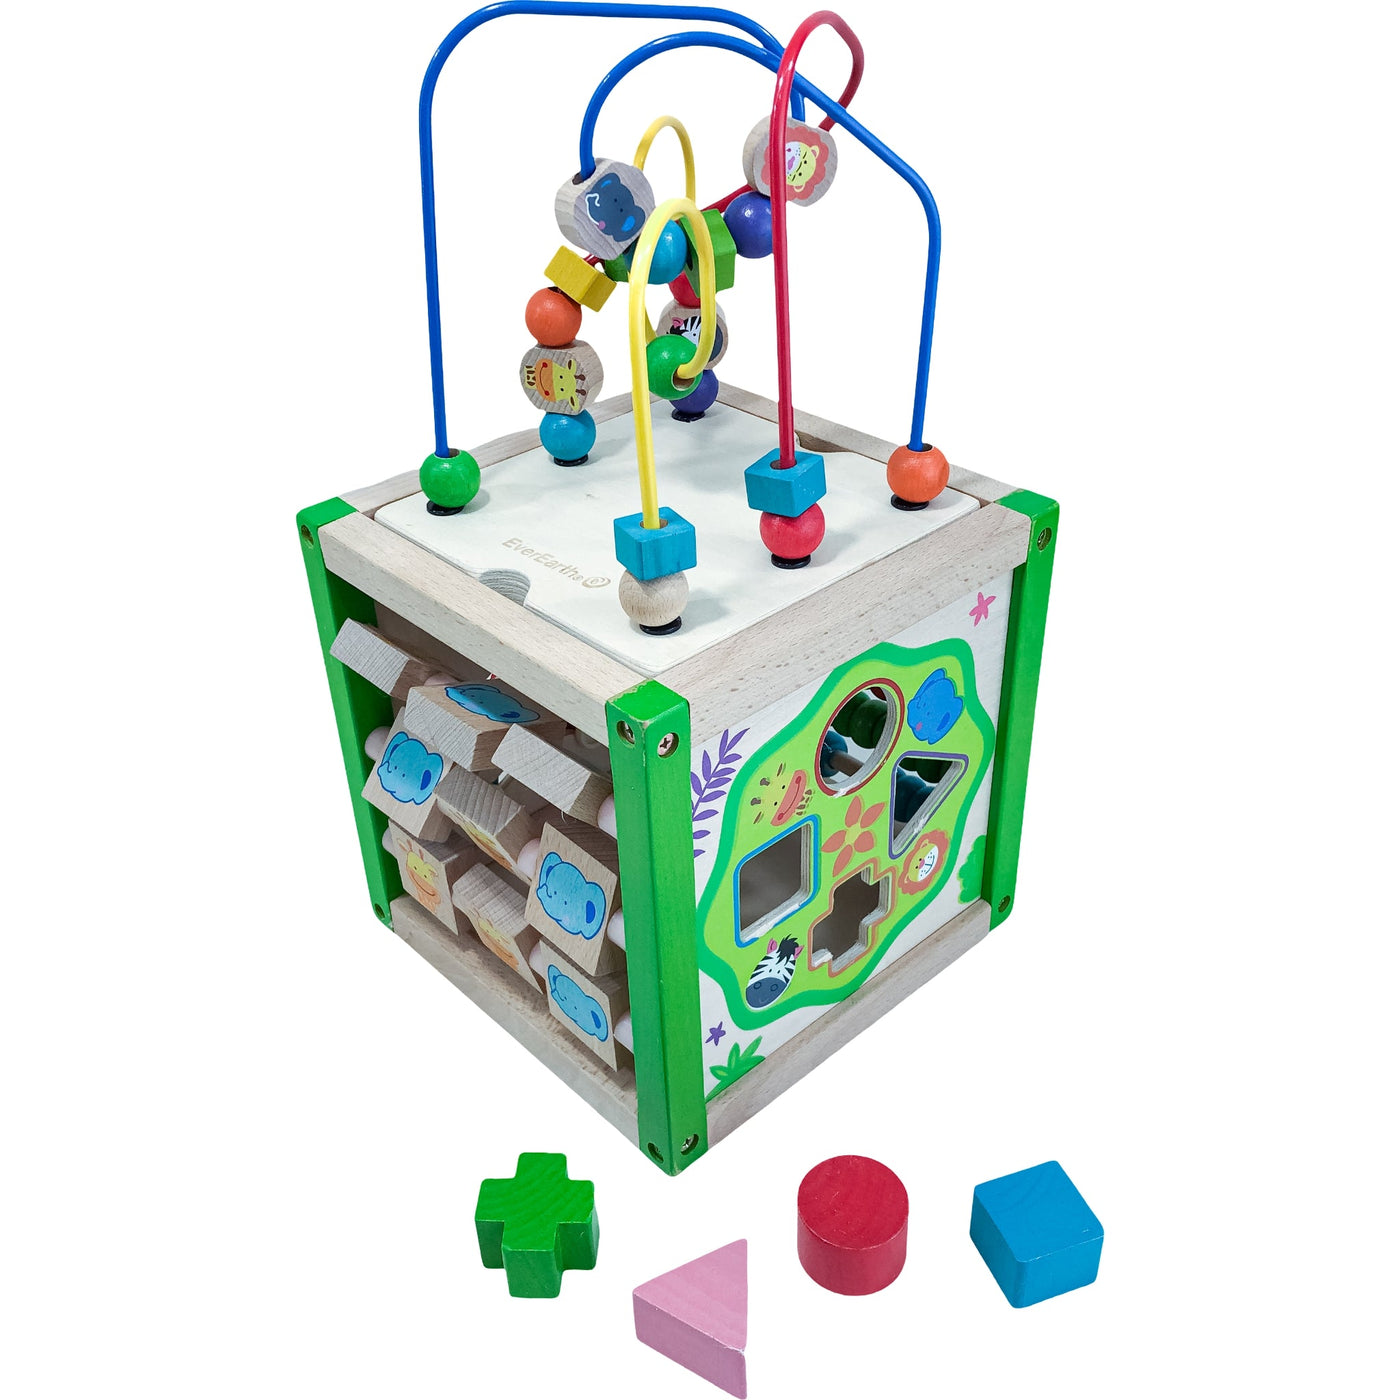 Cube d'activités "Mon premier cube d'activité - Multi jeux" de seconde main en bois pour enfant à partir de 18 mois - Vue 2